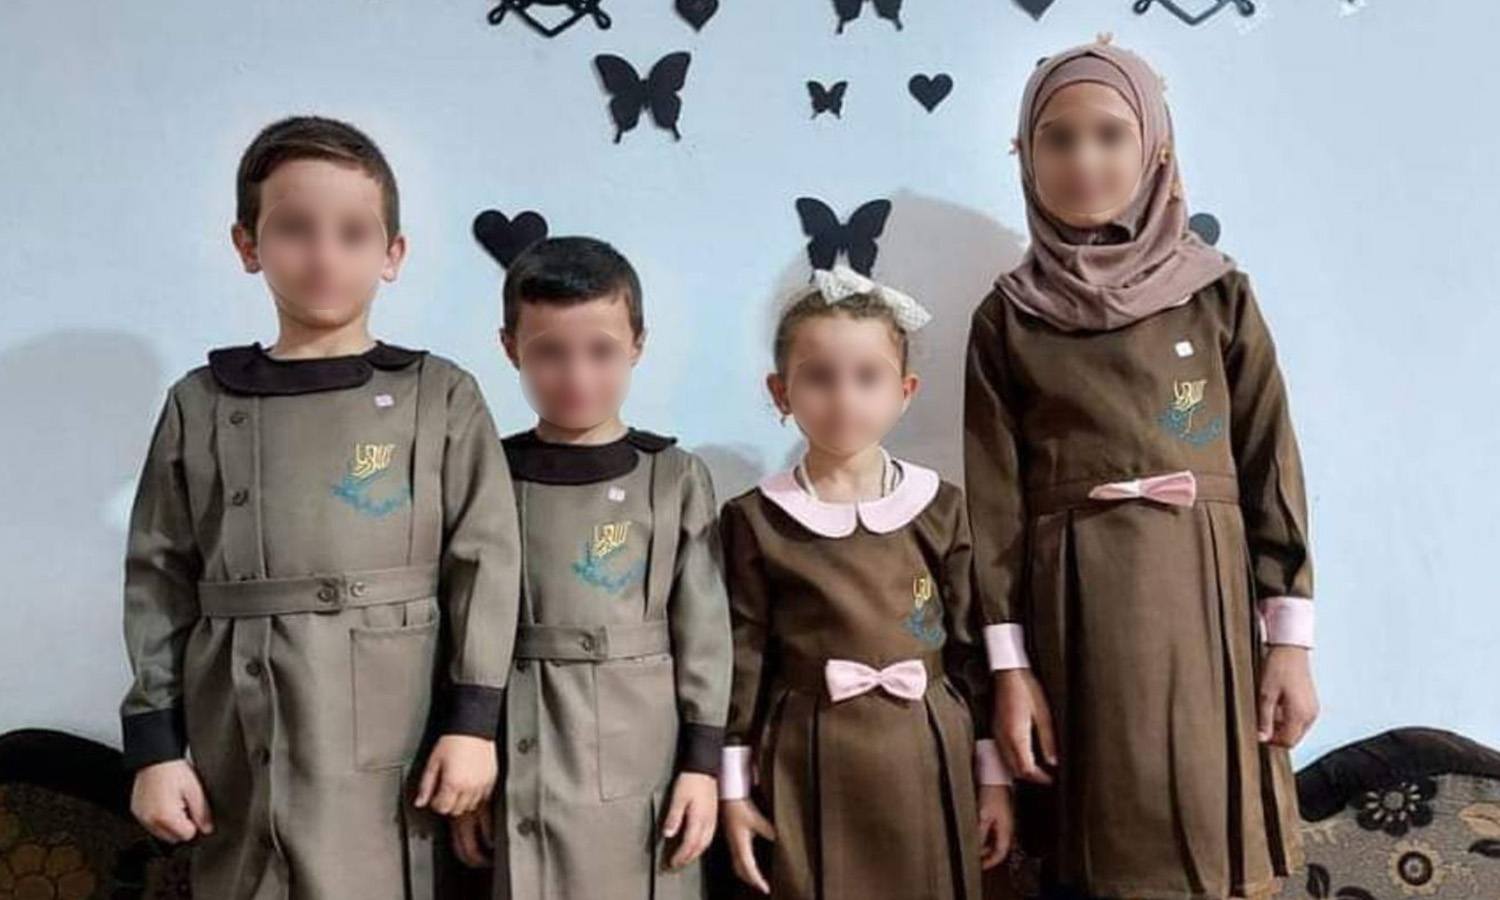 أطفال يرتدون لباس مدرسي جديد فرضته حكومة "الإنقاذ" العاملة في إدلب (متداول صفحات محلية)